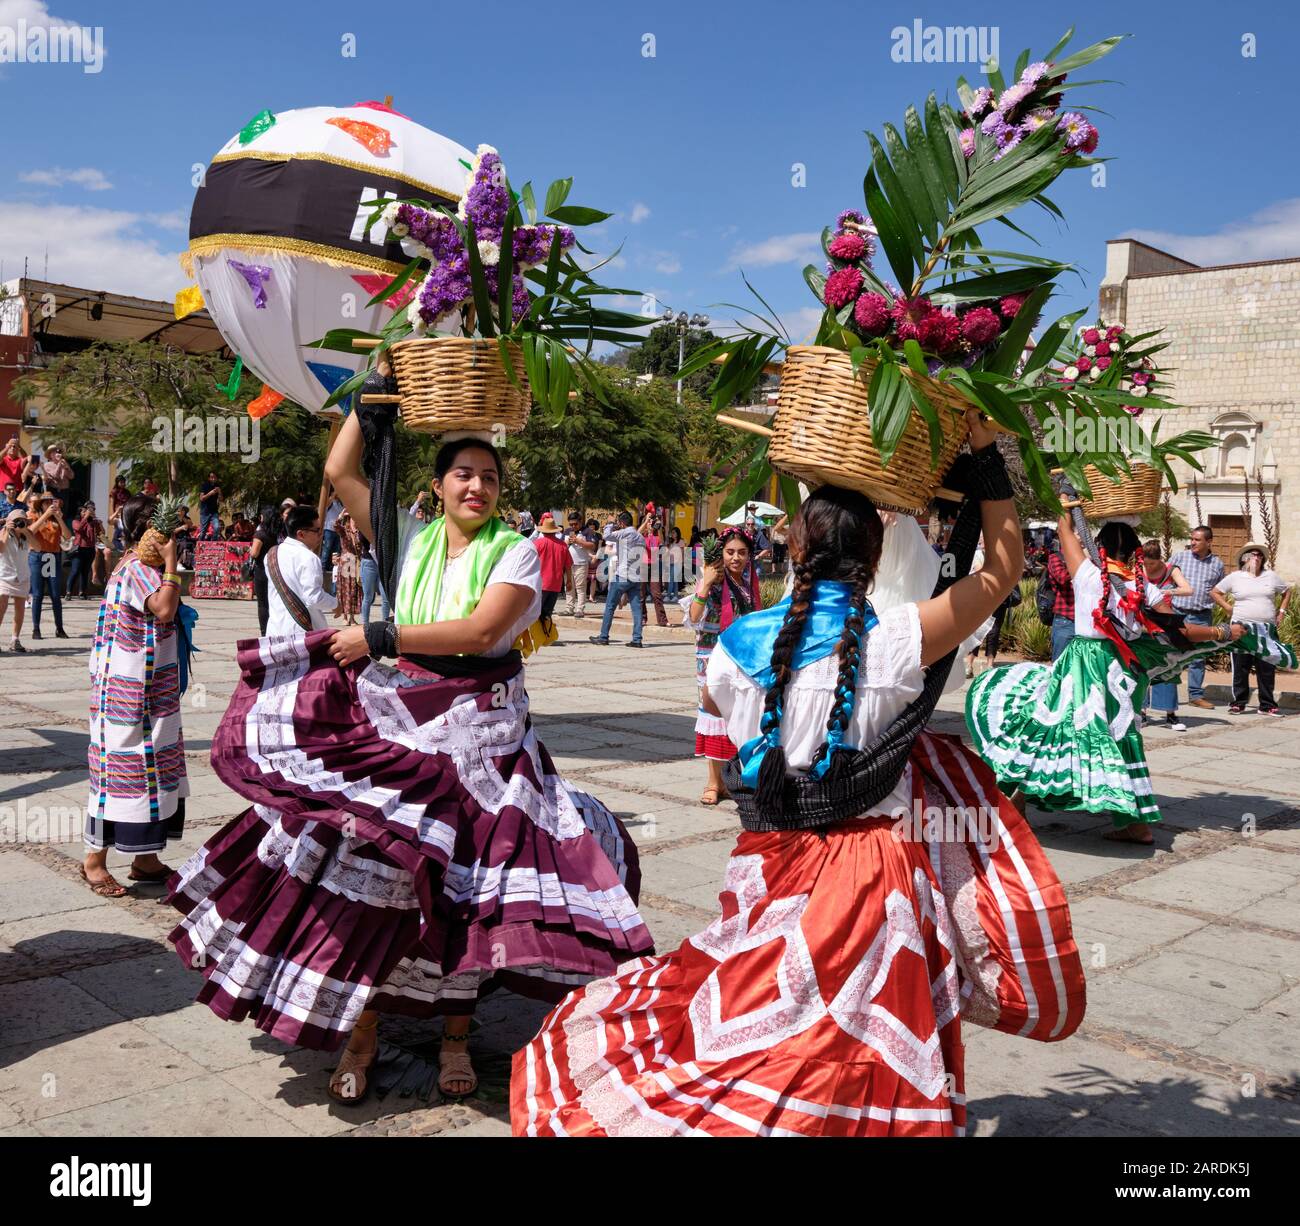 Frau tanzt in fließenden traditionellen Outfit mit Blumenkorb Teil der traditionellen Parade (Calenda de Bodas) auf den Straßen von Oaxaca. Stockfoto